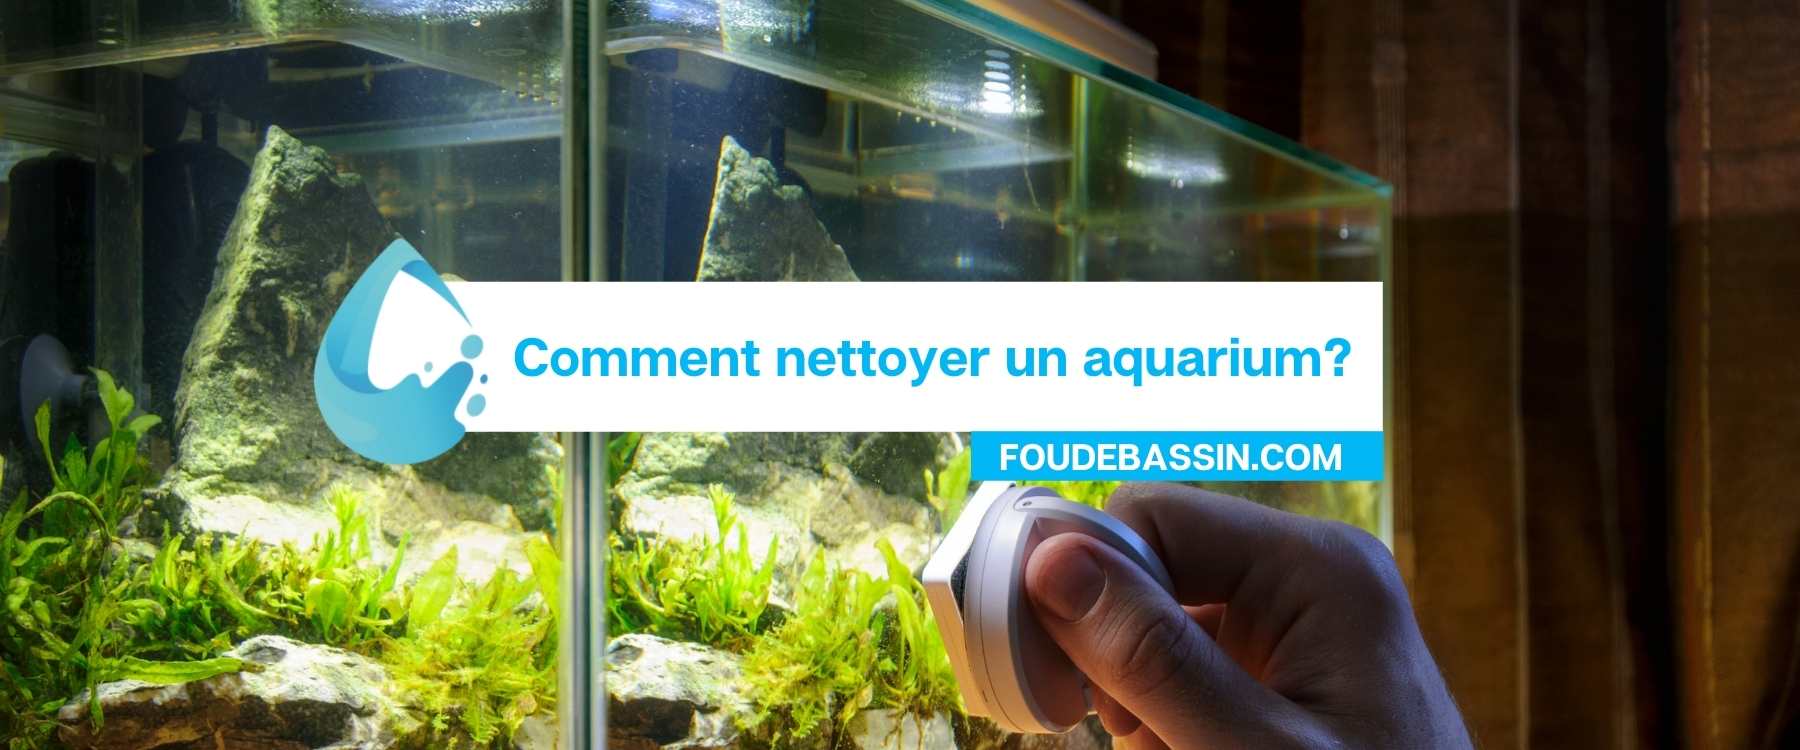 Comment nettoyer un aquarium?